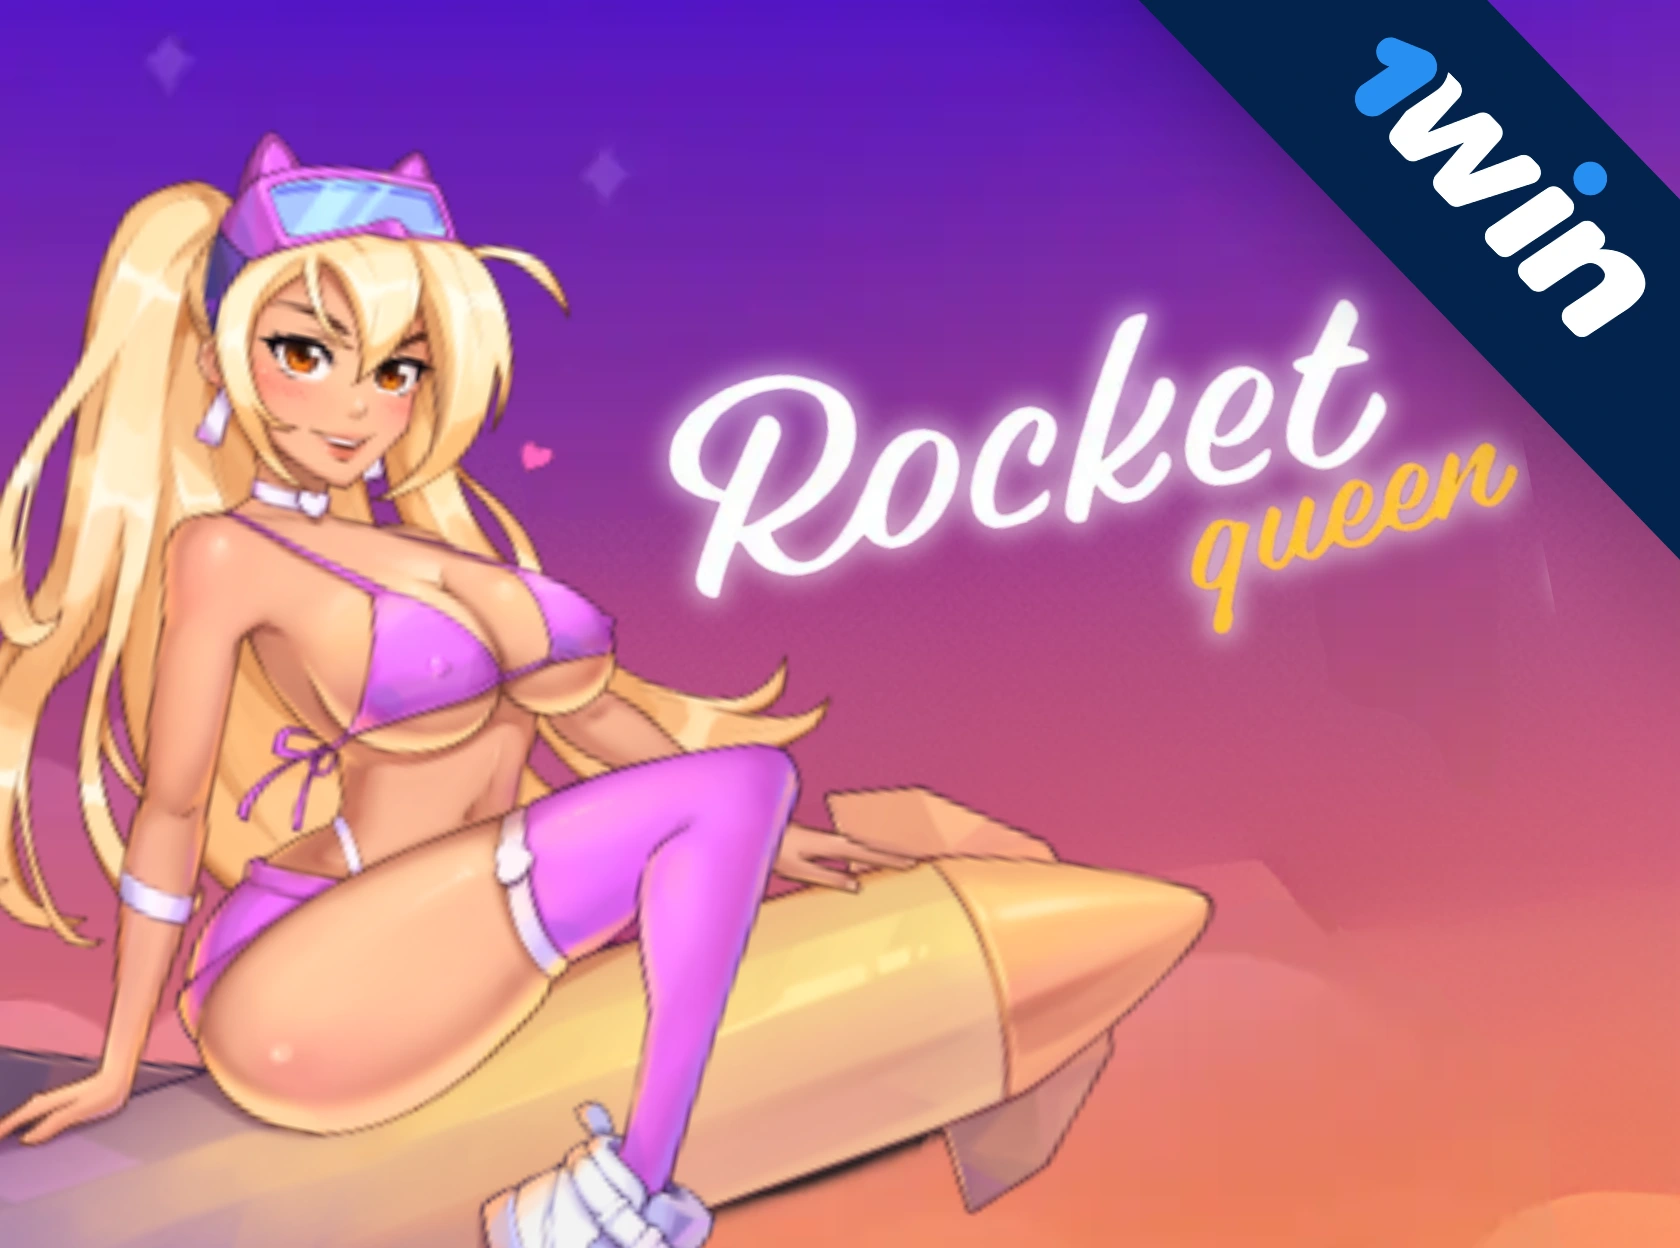 Rocket Queen - 1win-тің жарылғыш соққысы!